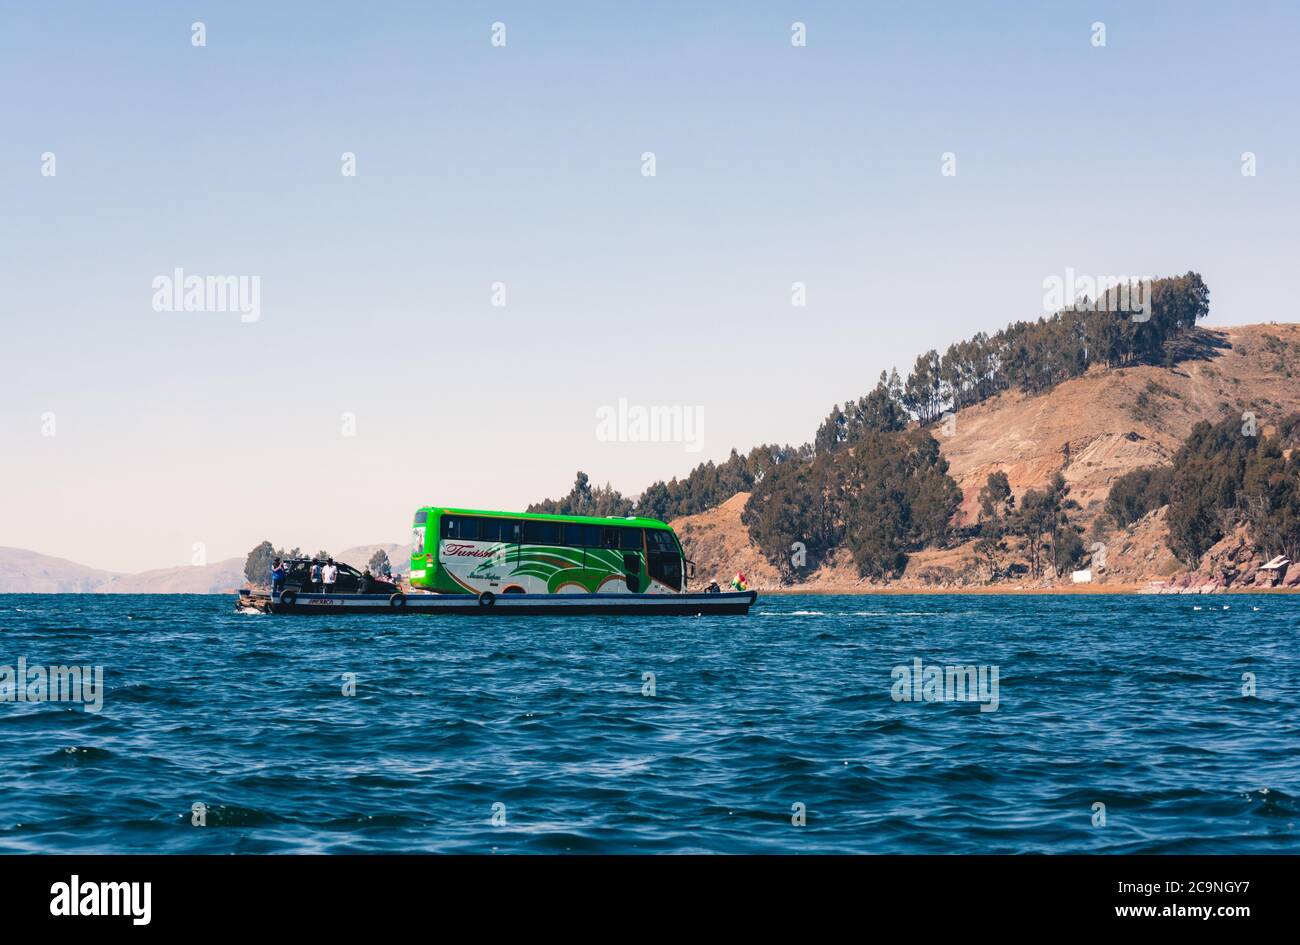 SAN PEDRO DE TIQUINA, BOLIVIA - 23 LUGLIO 2016: Un autobus turistico è trasportato su una zattera di legno nel lago Titicaca, Bolivia Foto Stock